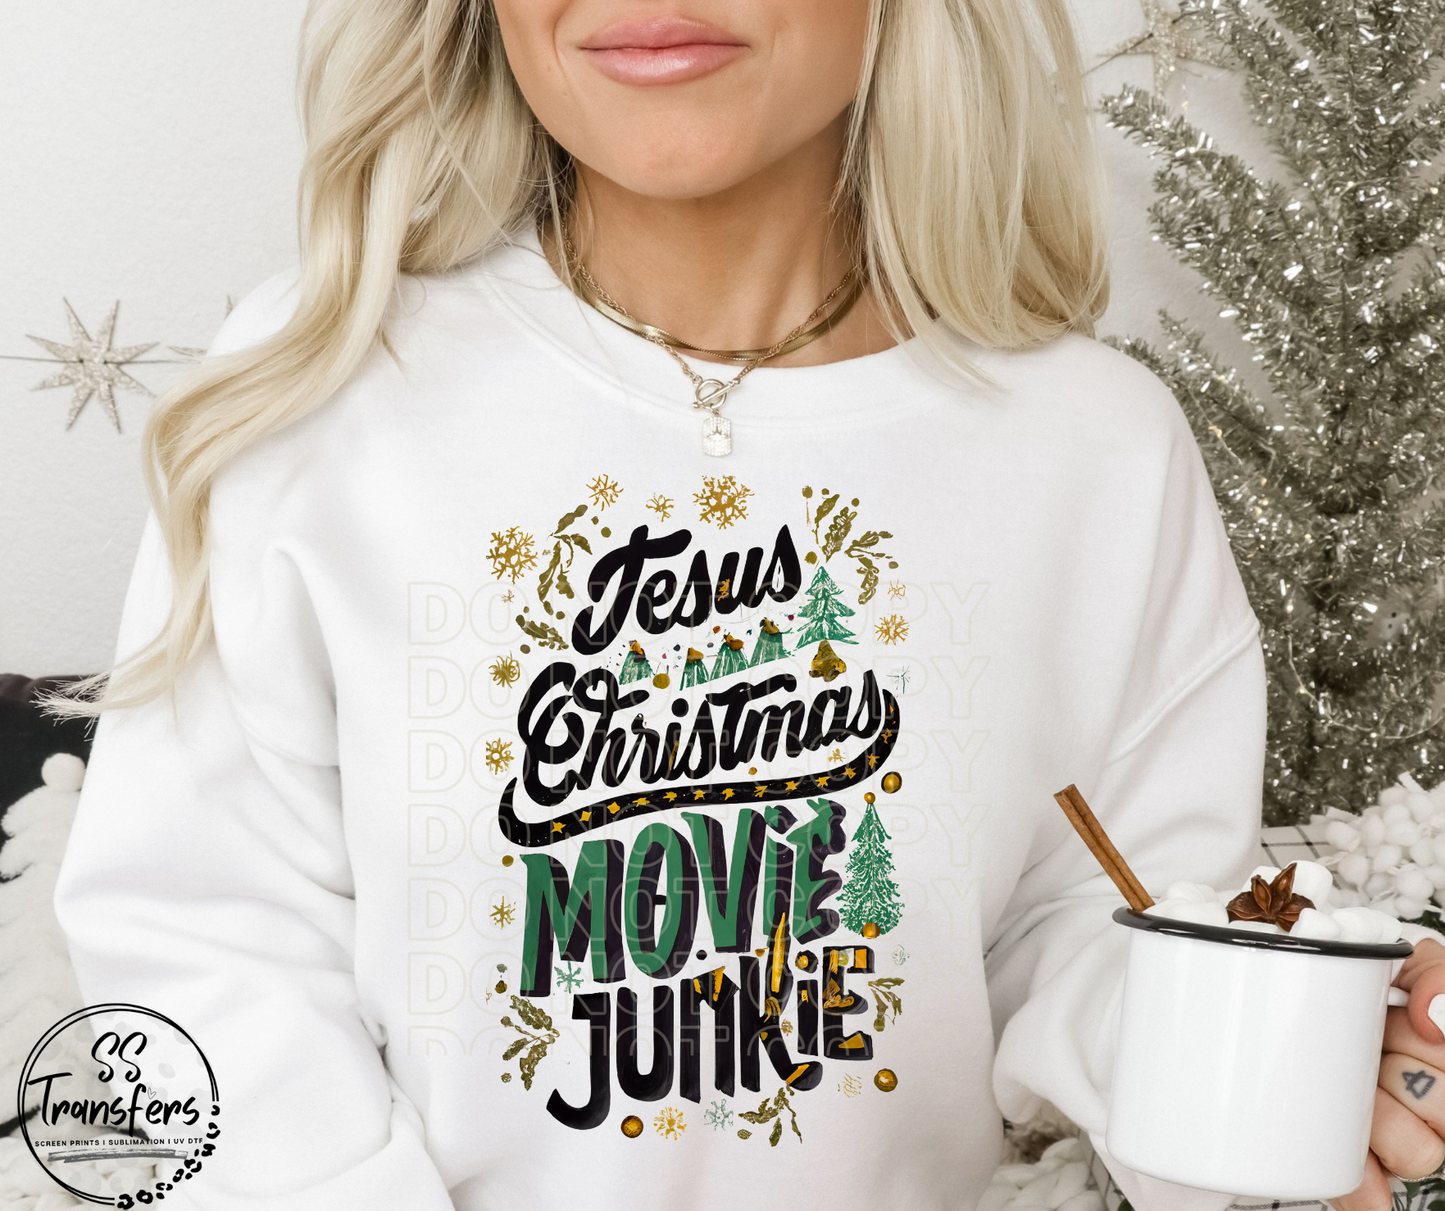 Jesus and Christmas Movies DTF Transfer